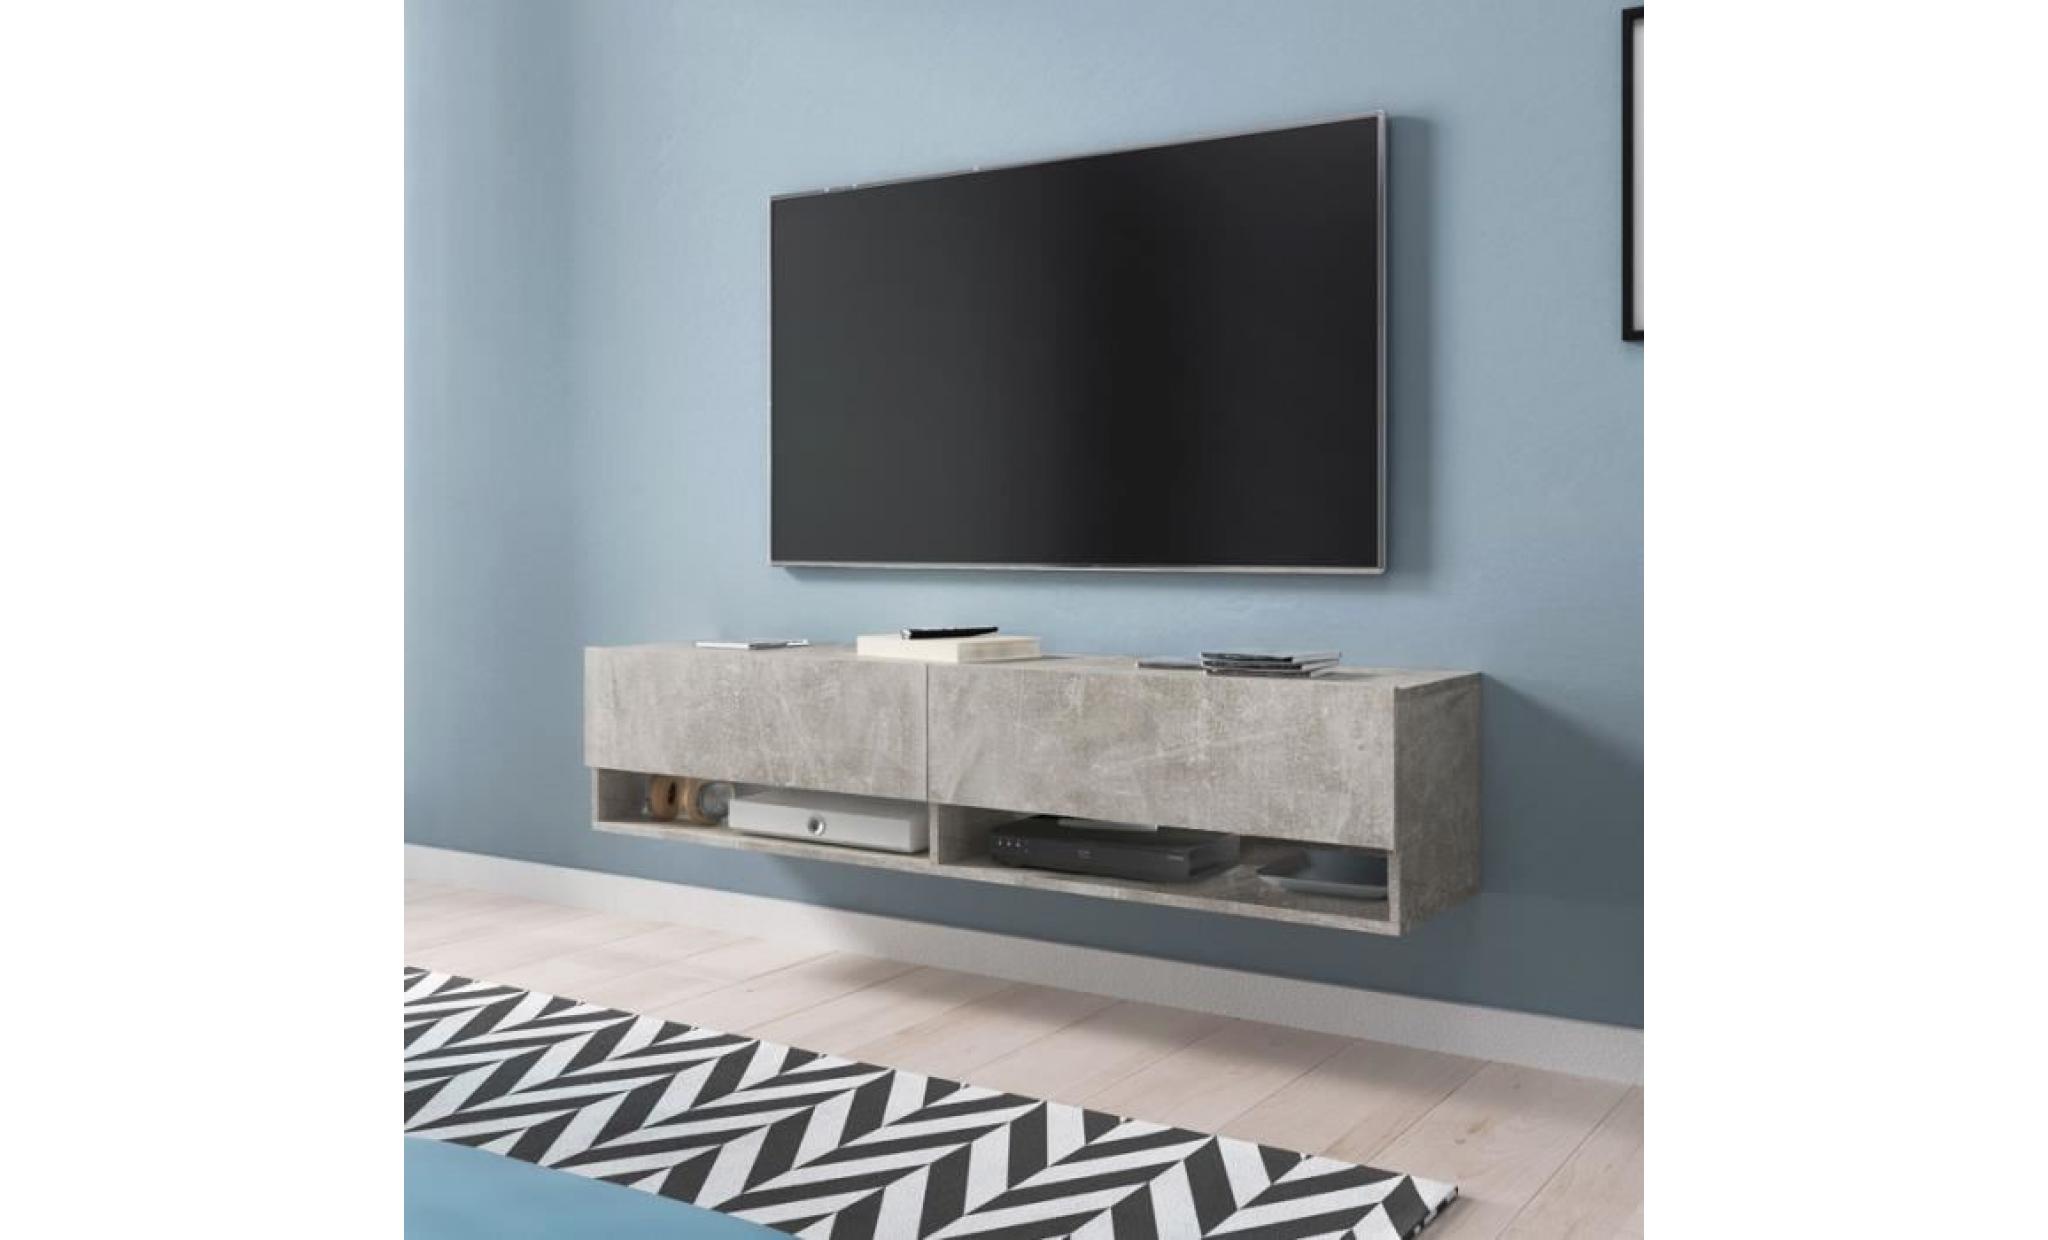 meuble tv / meuble de salon   wander   140 cm   béton   sans led   2 niches ouvertes   style industriel